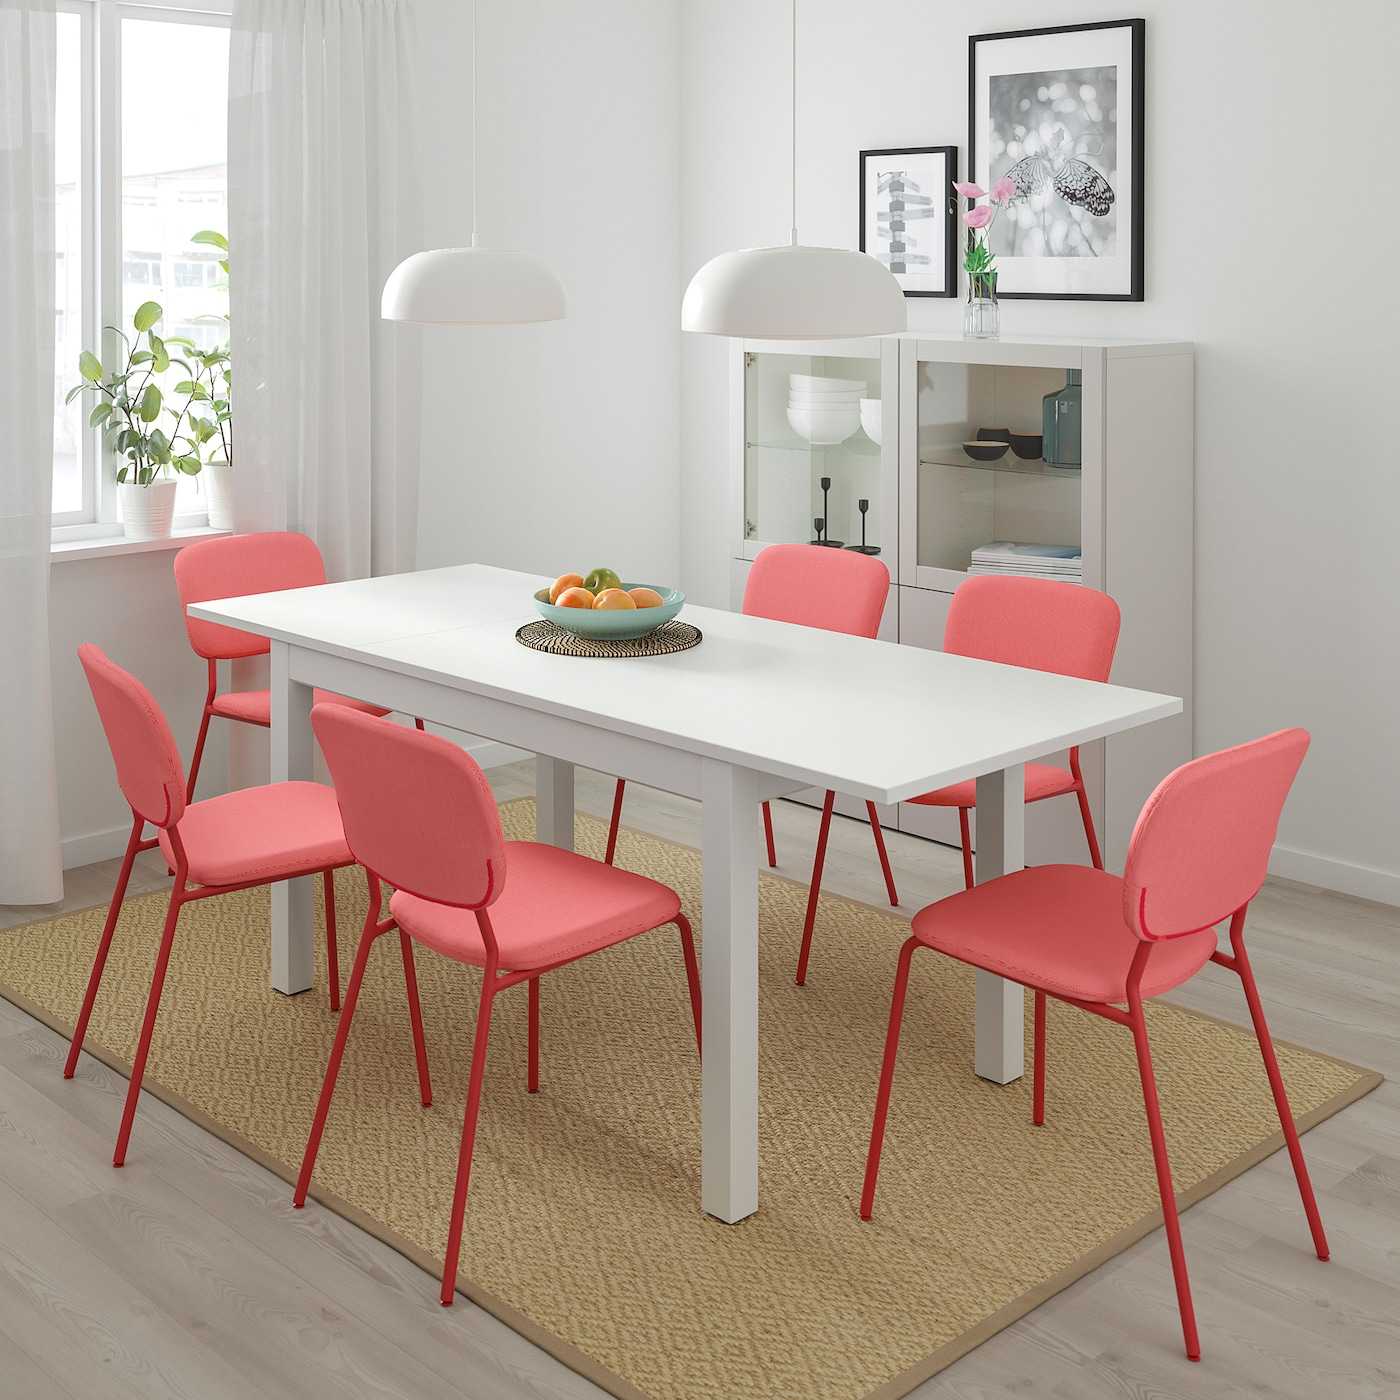 Мебель ikea для кухни: столы и стулья